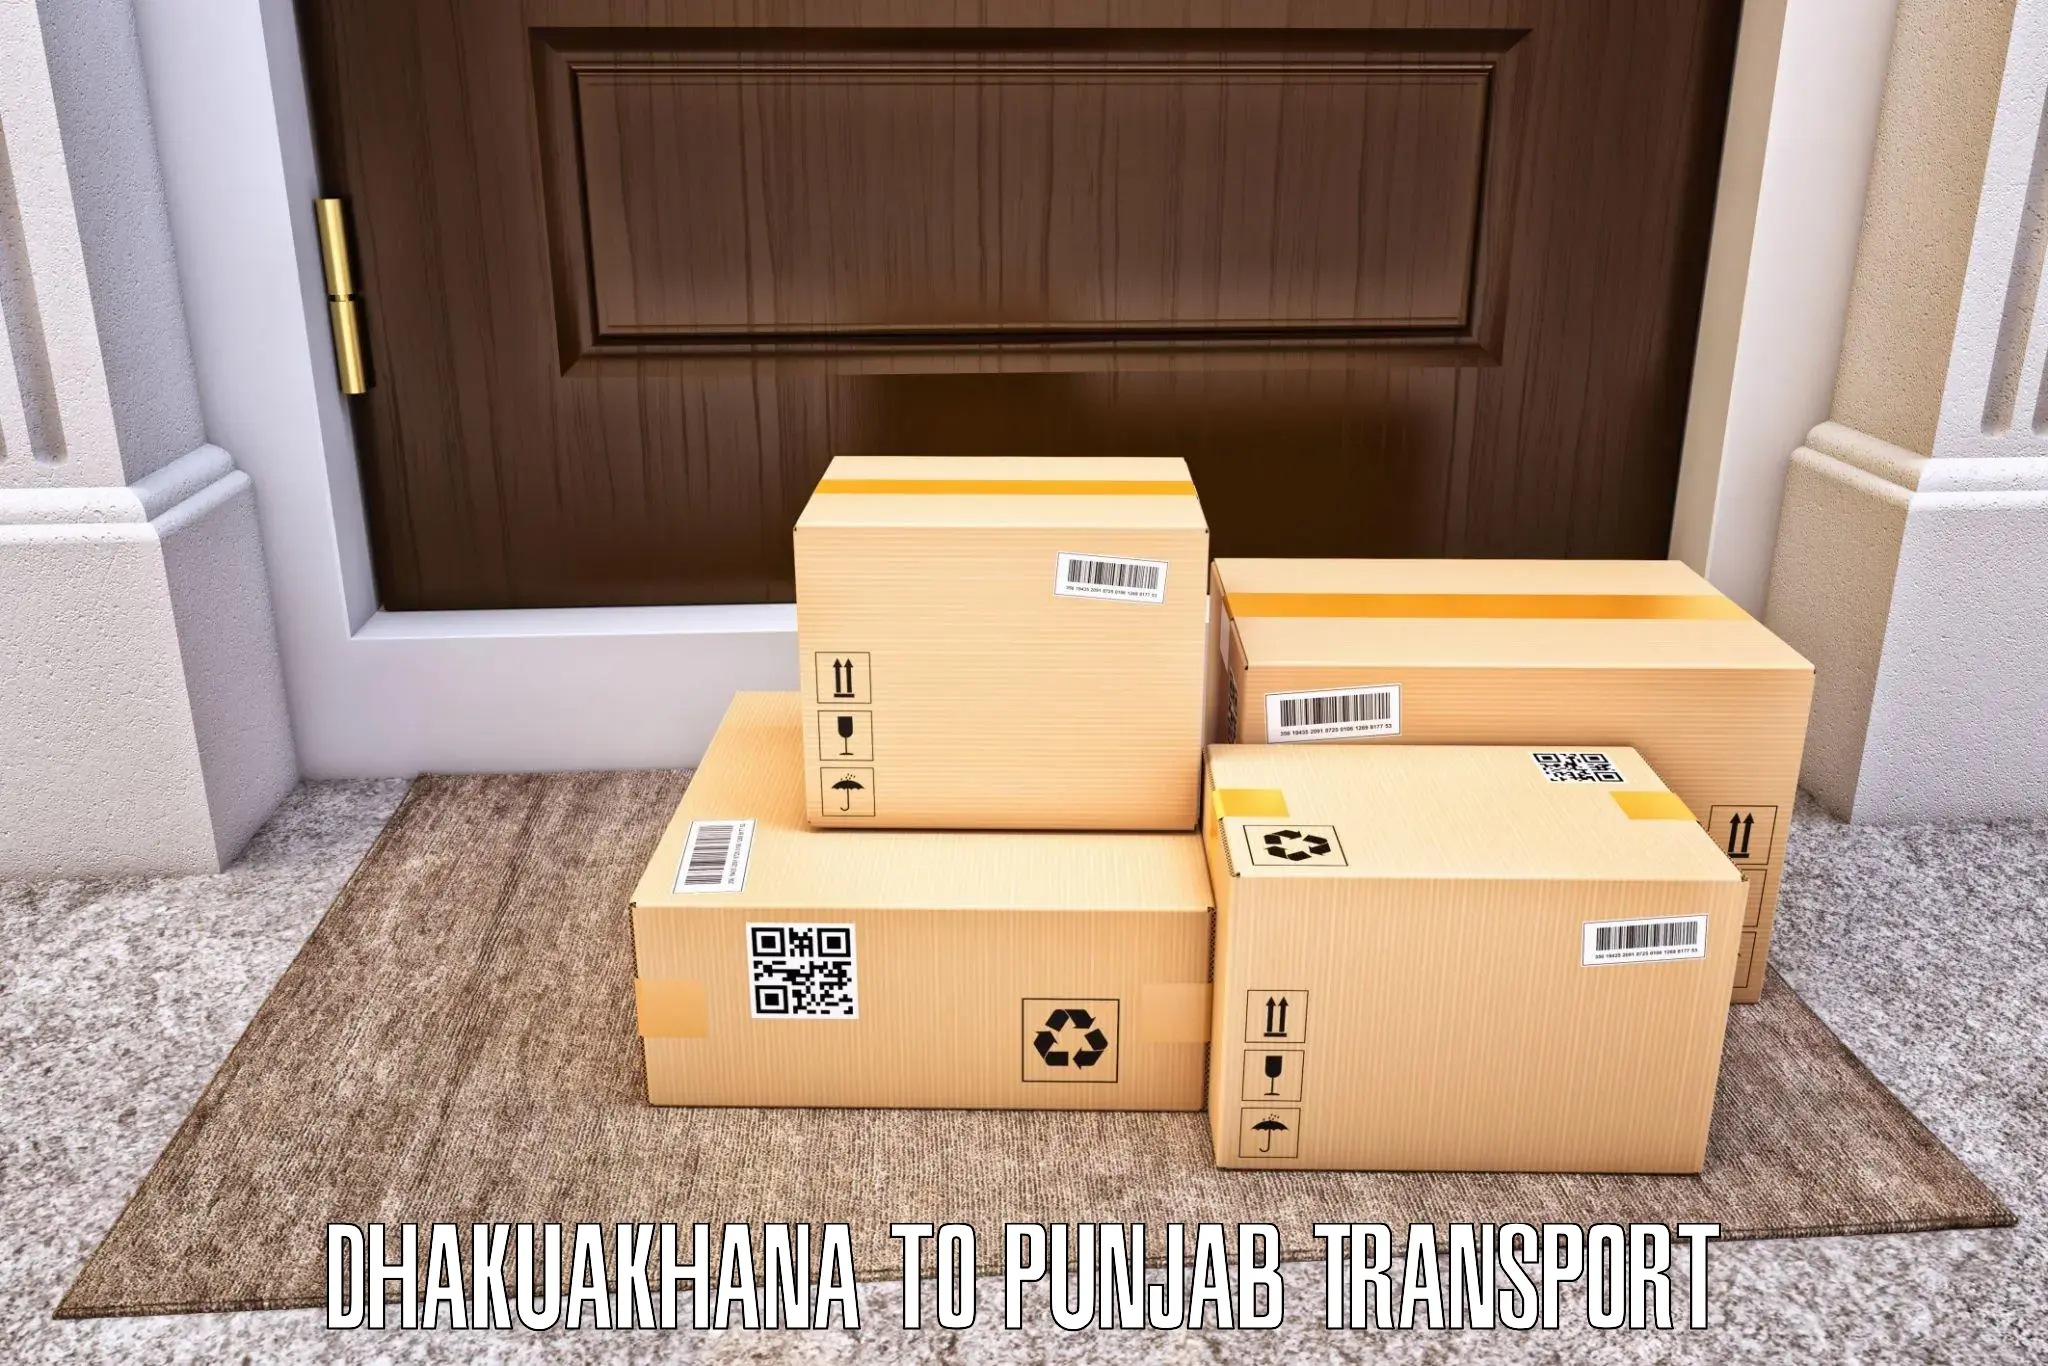 Transport in sharing Dhakuakhana to Patran